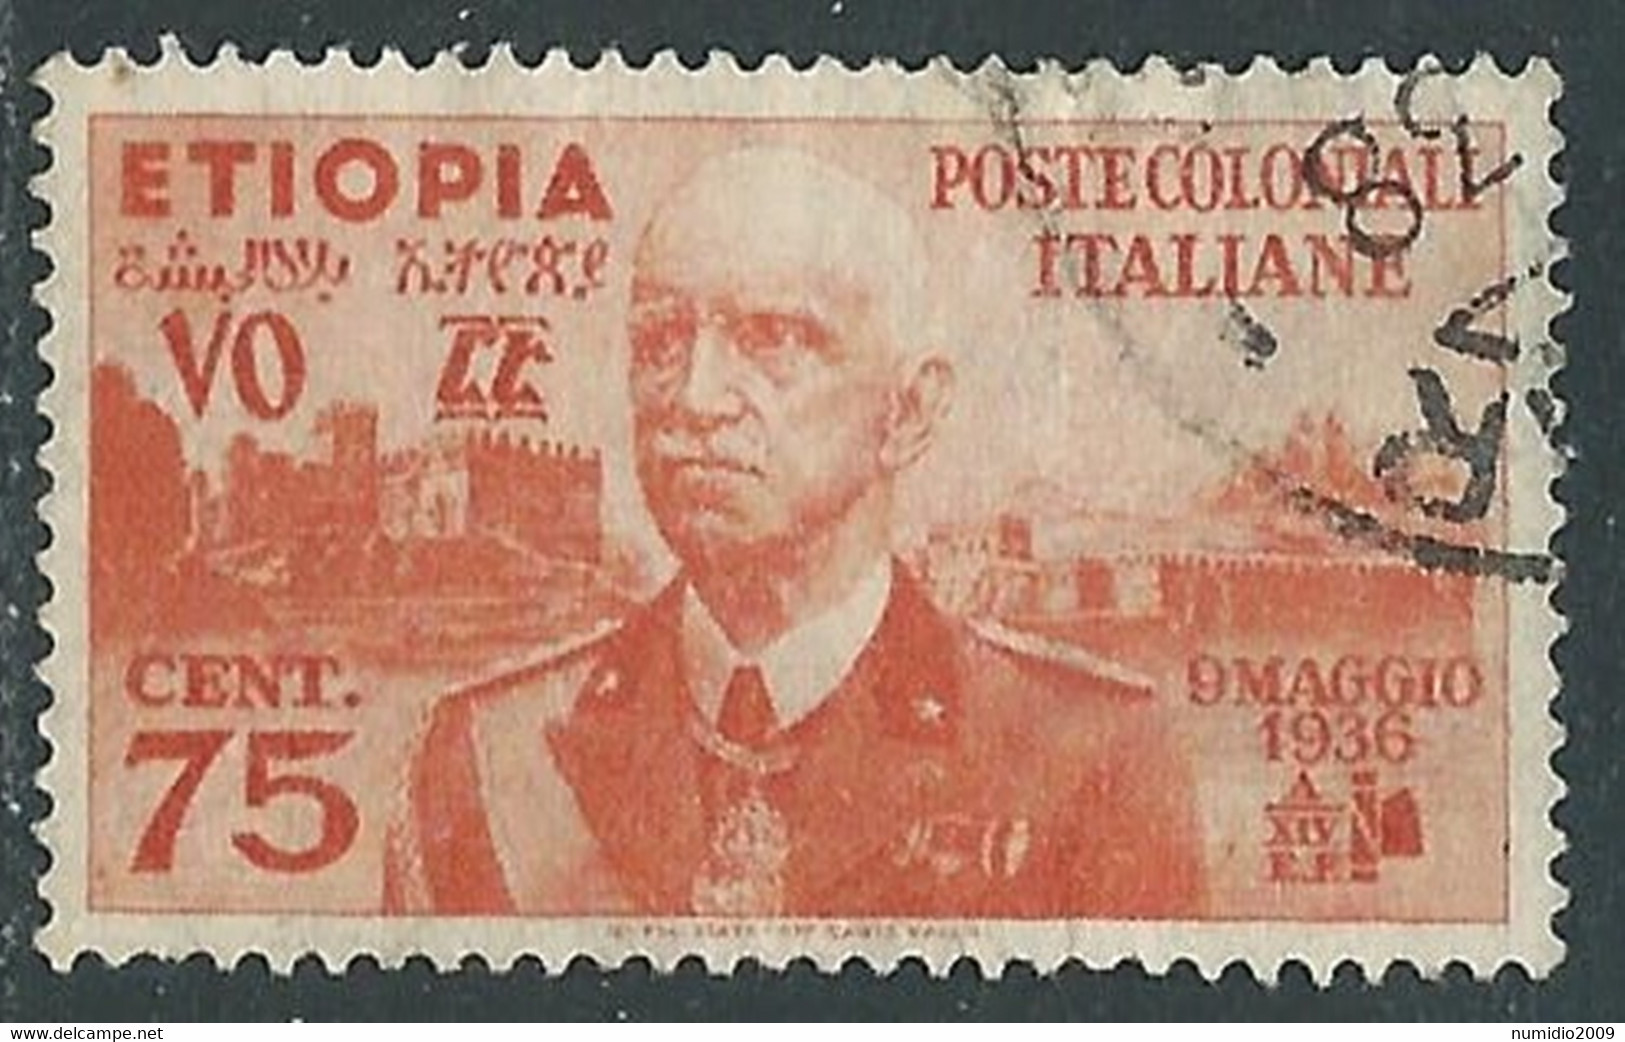 1936 ETIOPIA USATO EFFIGIE 75 CENT - RF25-5 - Ethiopie